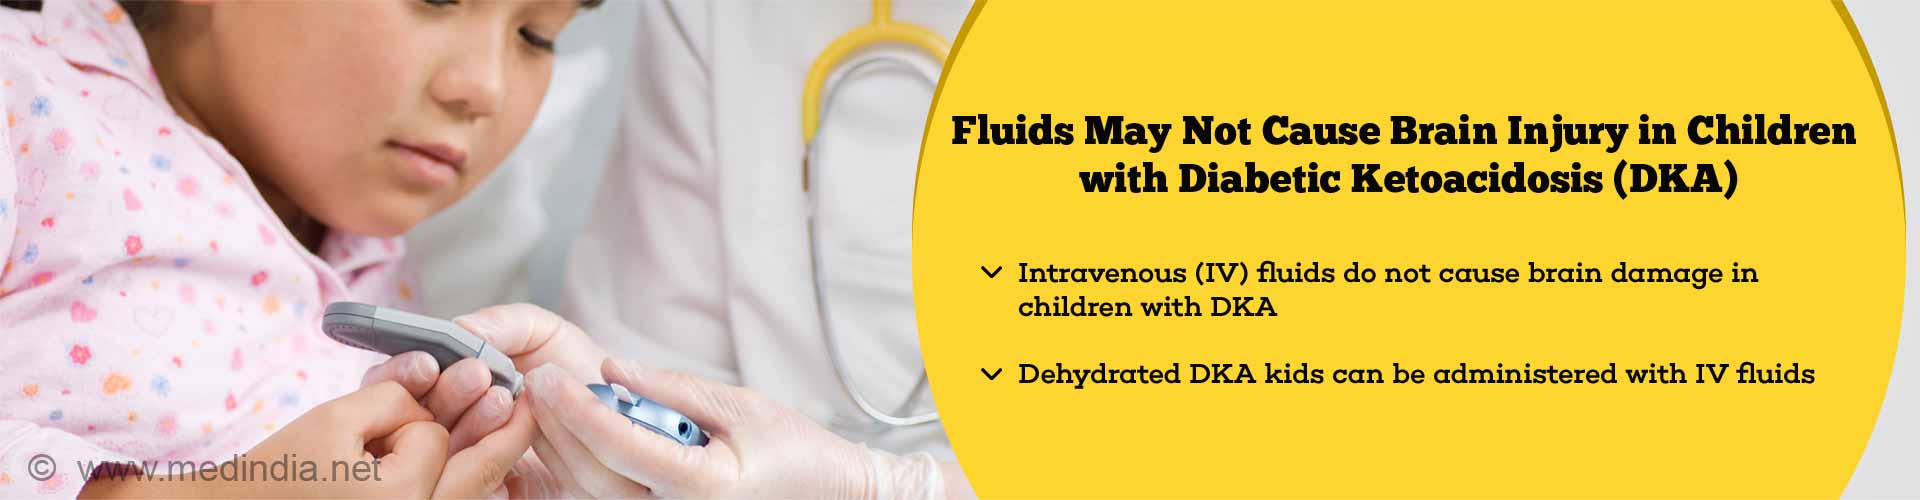 液体可能不会造成脑损伤儿童糖尿病酮症酸中毒(分析)。静脉注射(IV)液体不会引起儿童脑损伤分析。脱水分析孩子可以与静脉输液管理。